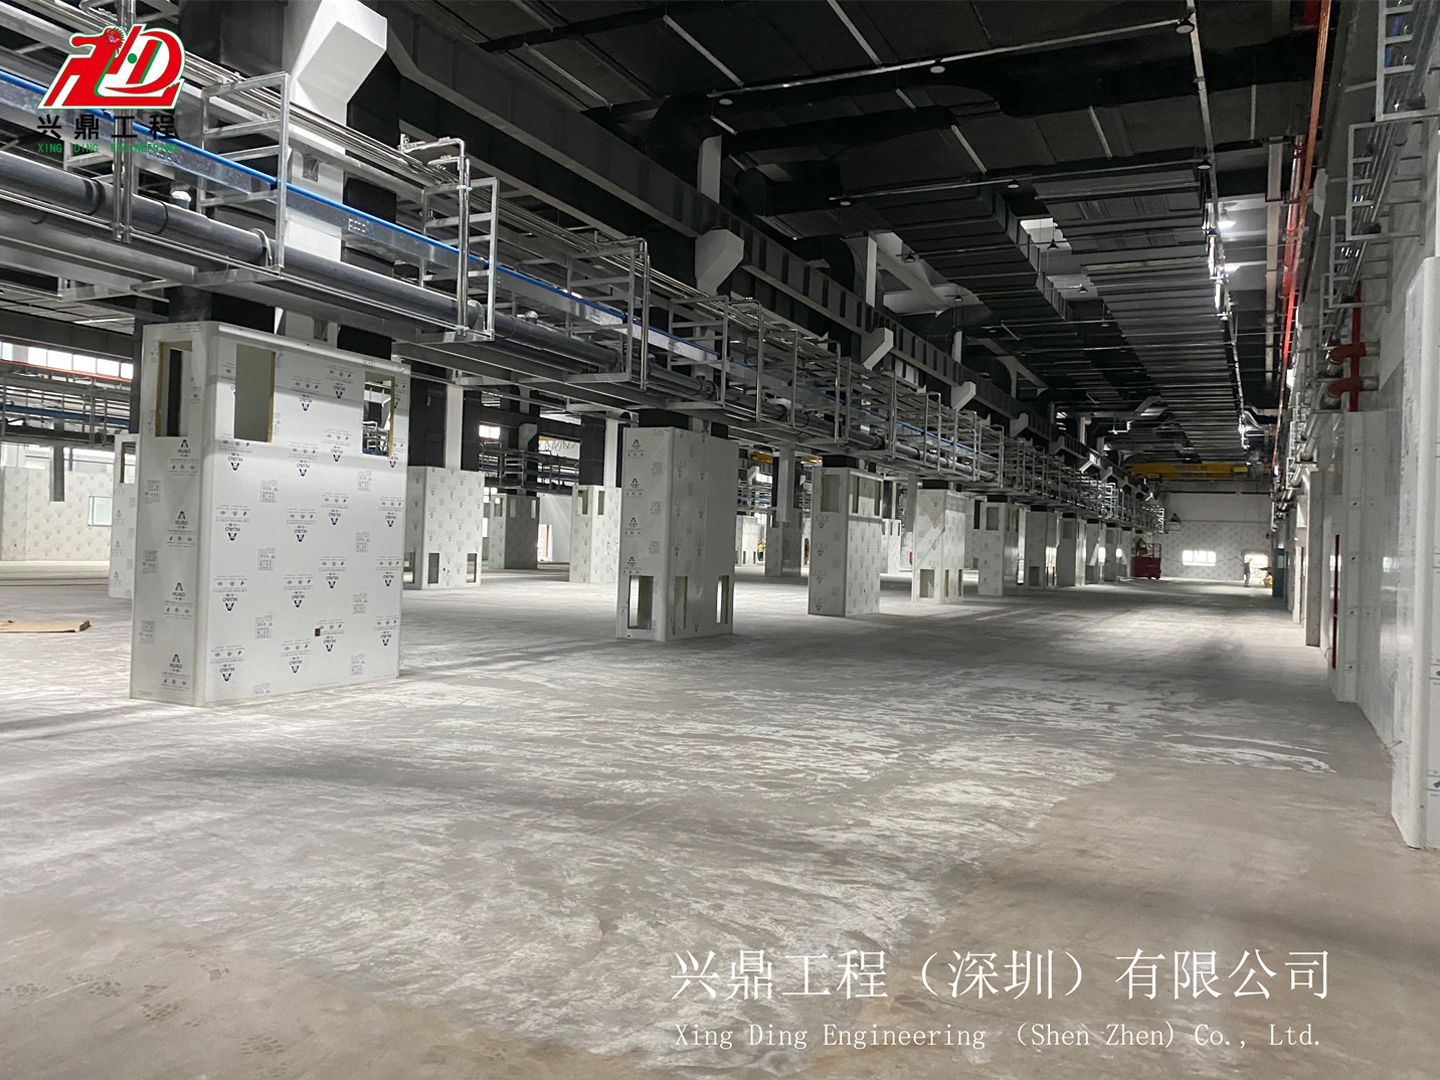 项目分享 | 浙江拱东医疗器械股份有限公司机电安装综合工程